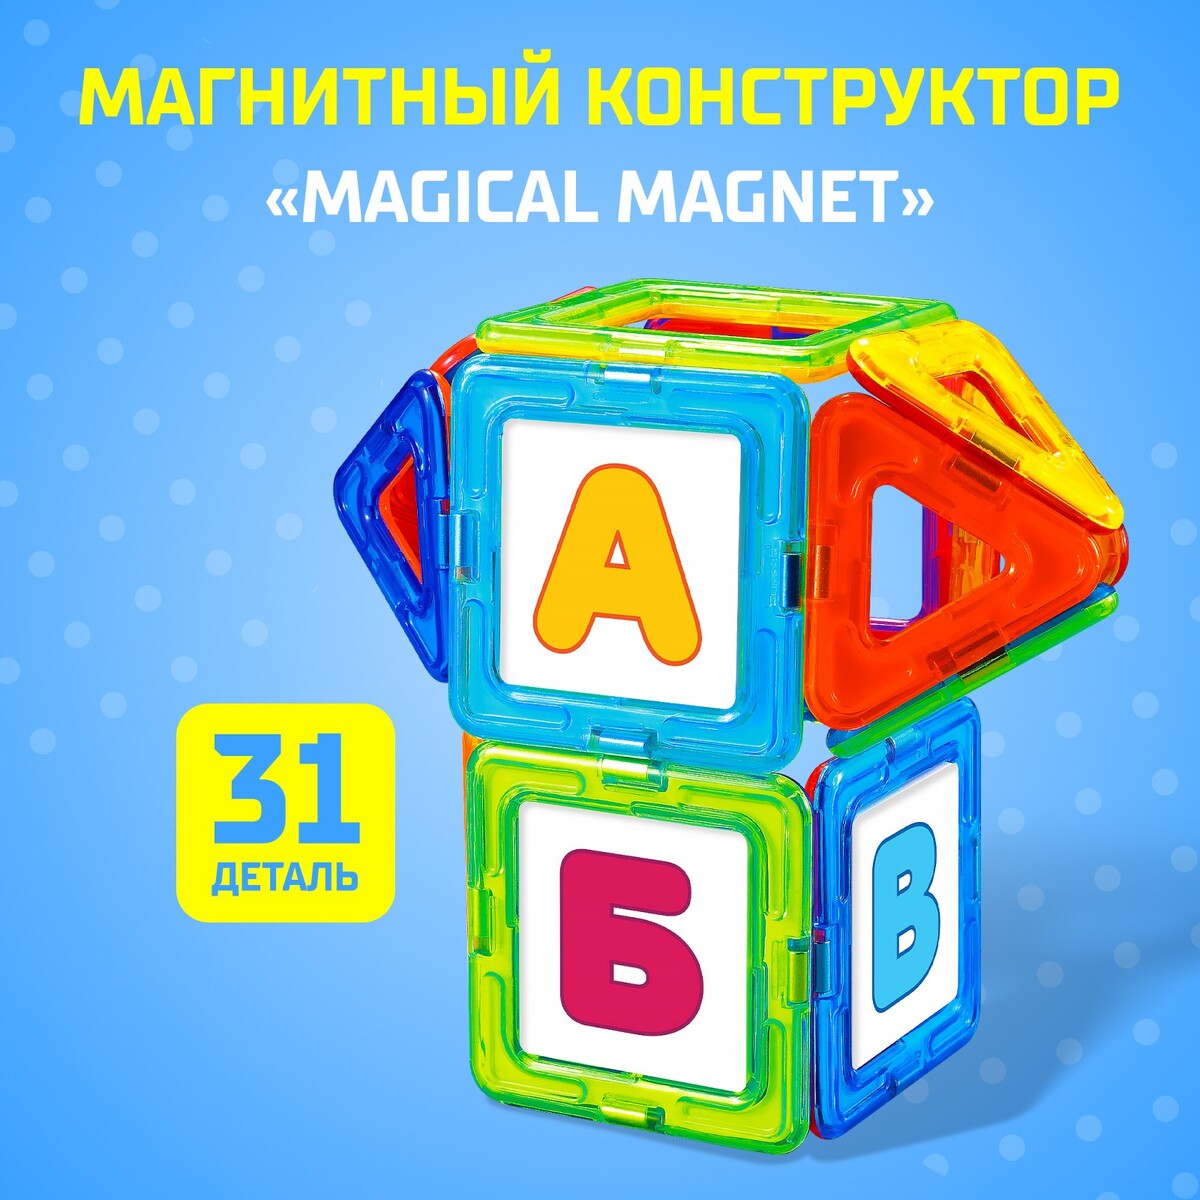 Магнитный конструктор magical magnet, 31 деталь, детали матовые конструктор магнитный домик 84 детали sima land